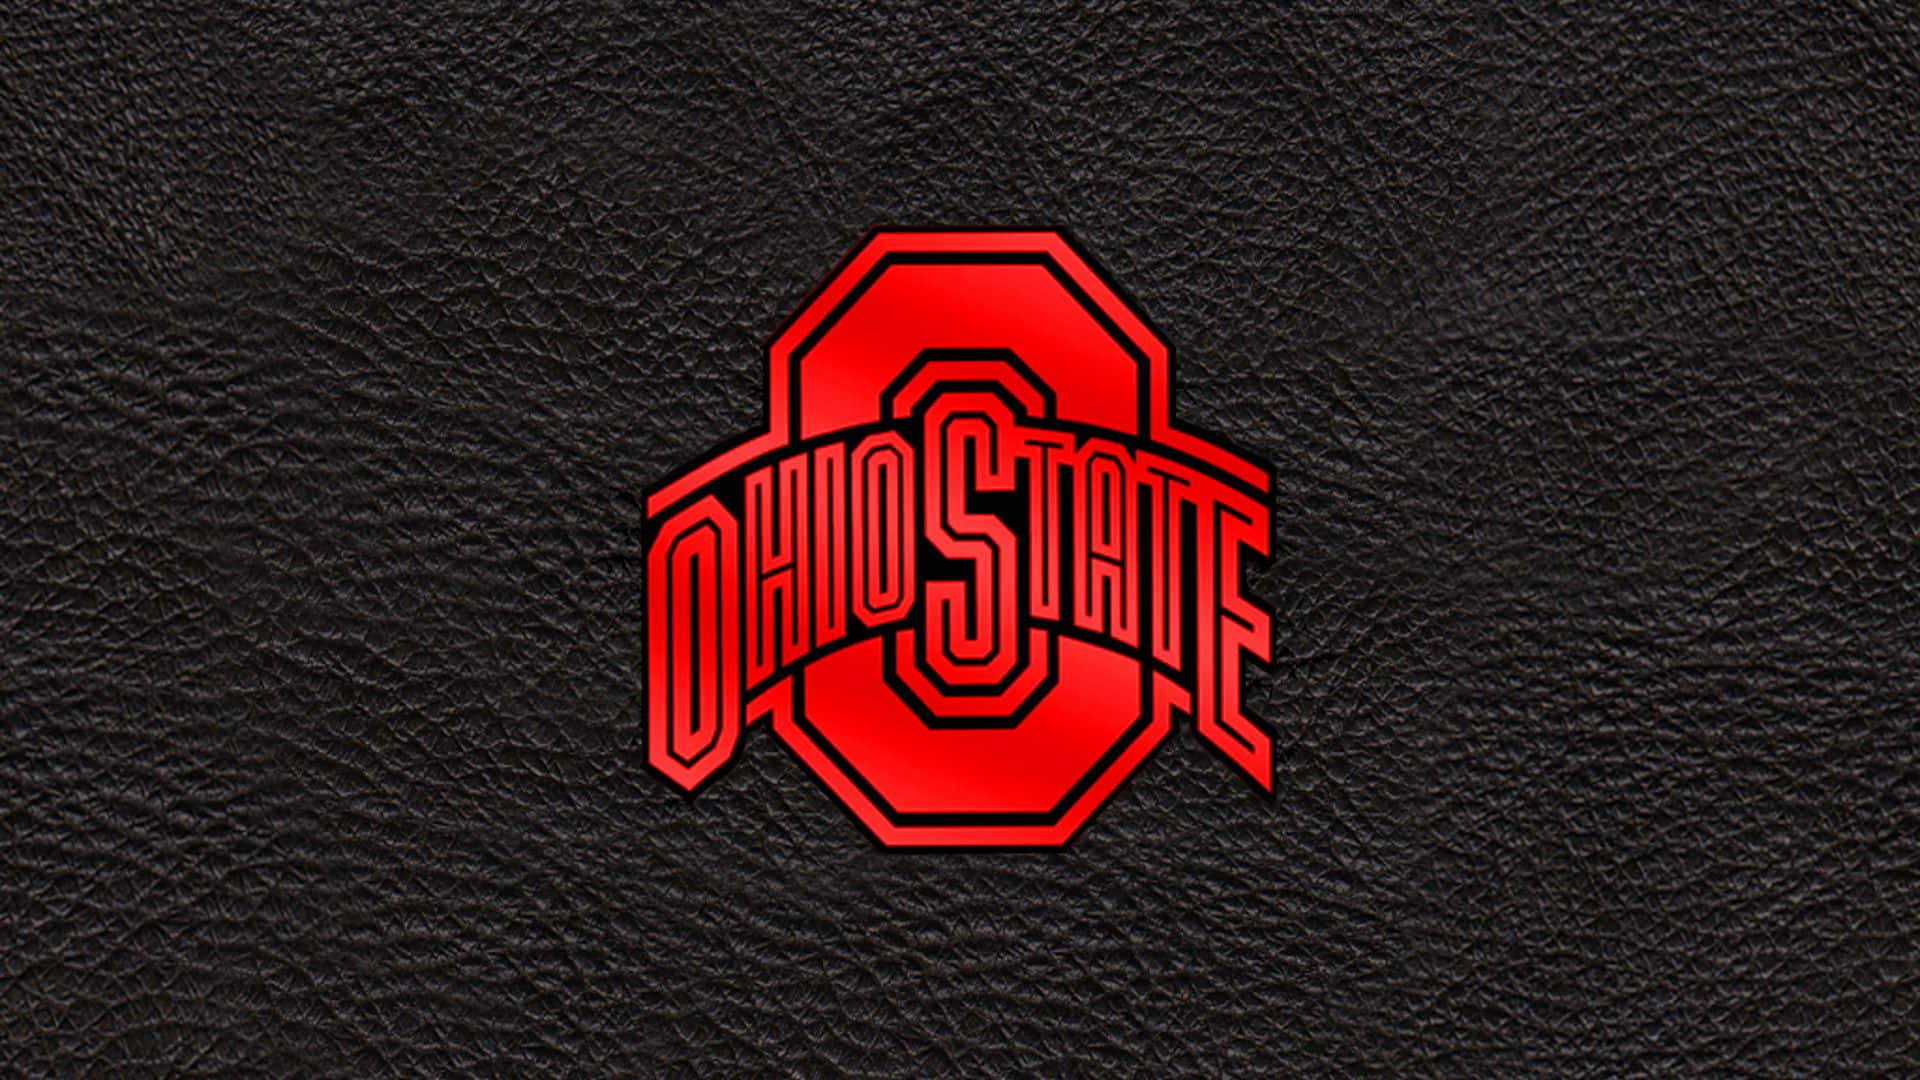 Alla Ohio State-logos I Rött. Wallpaper